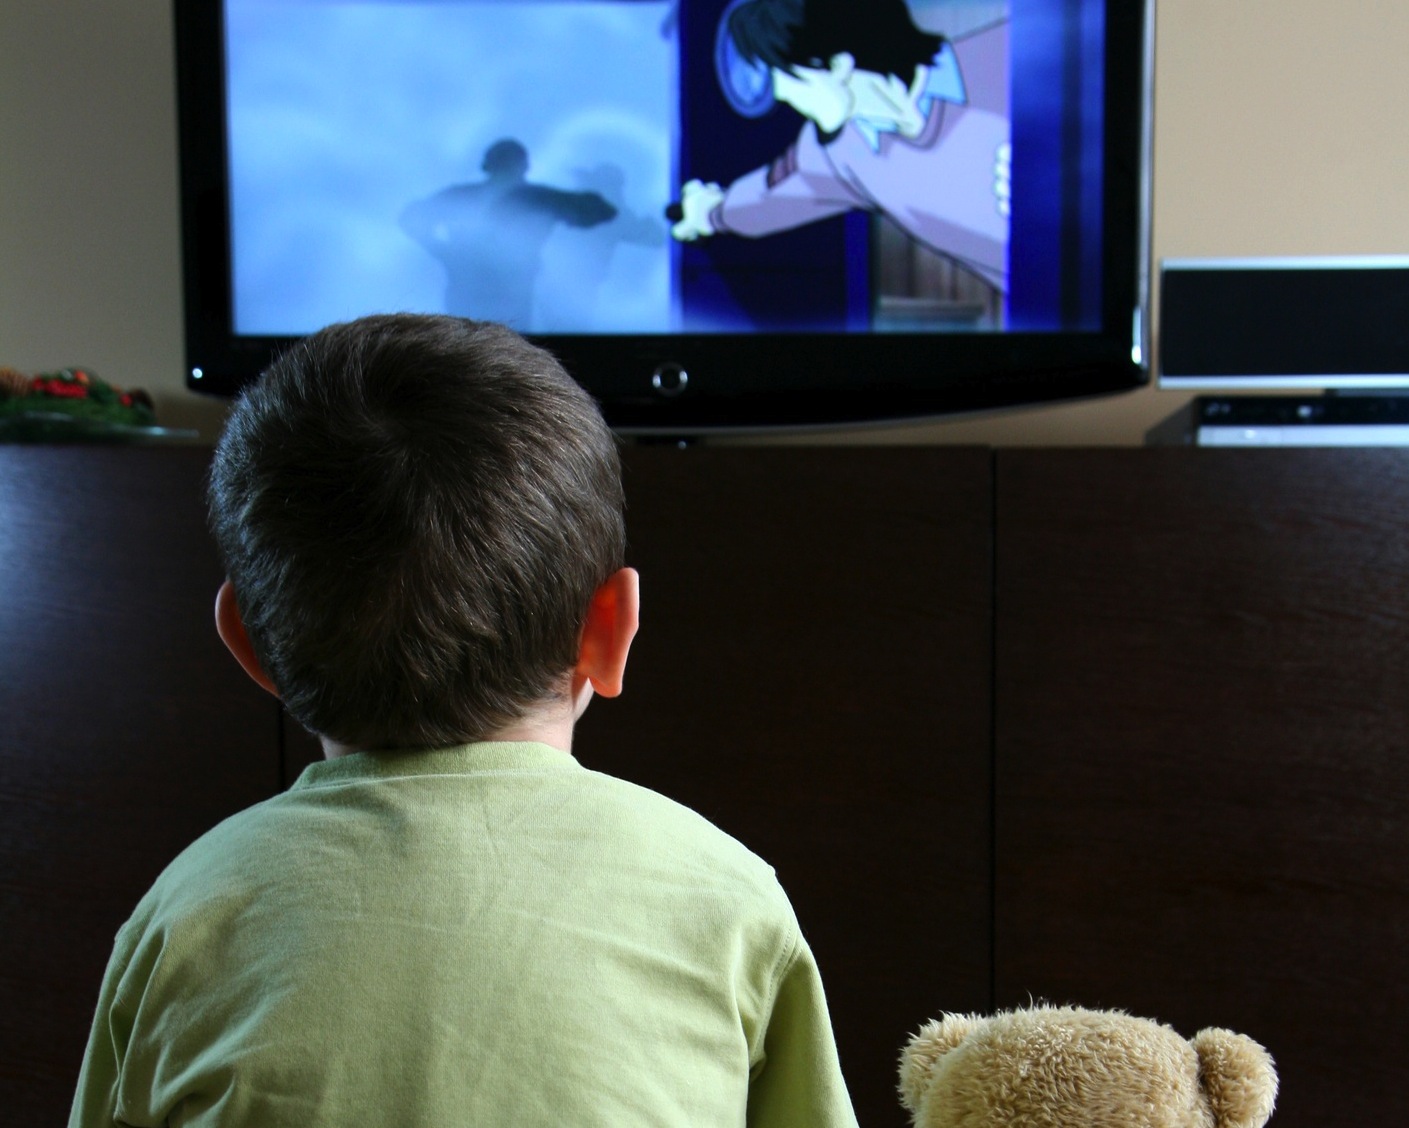 Elhízás és szívbetegség vár a sokat tévéző gyerekekre?